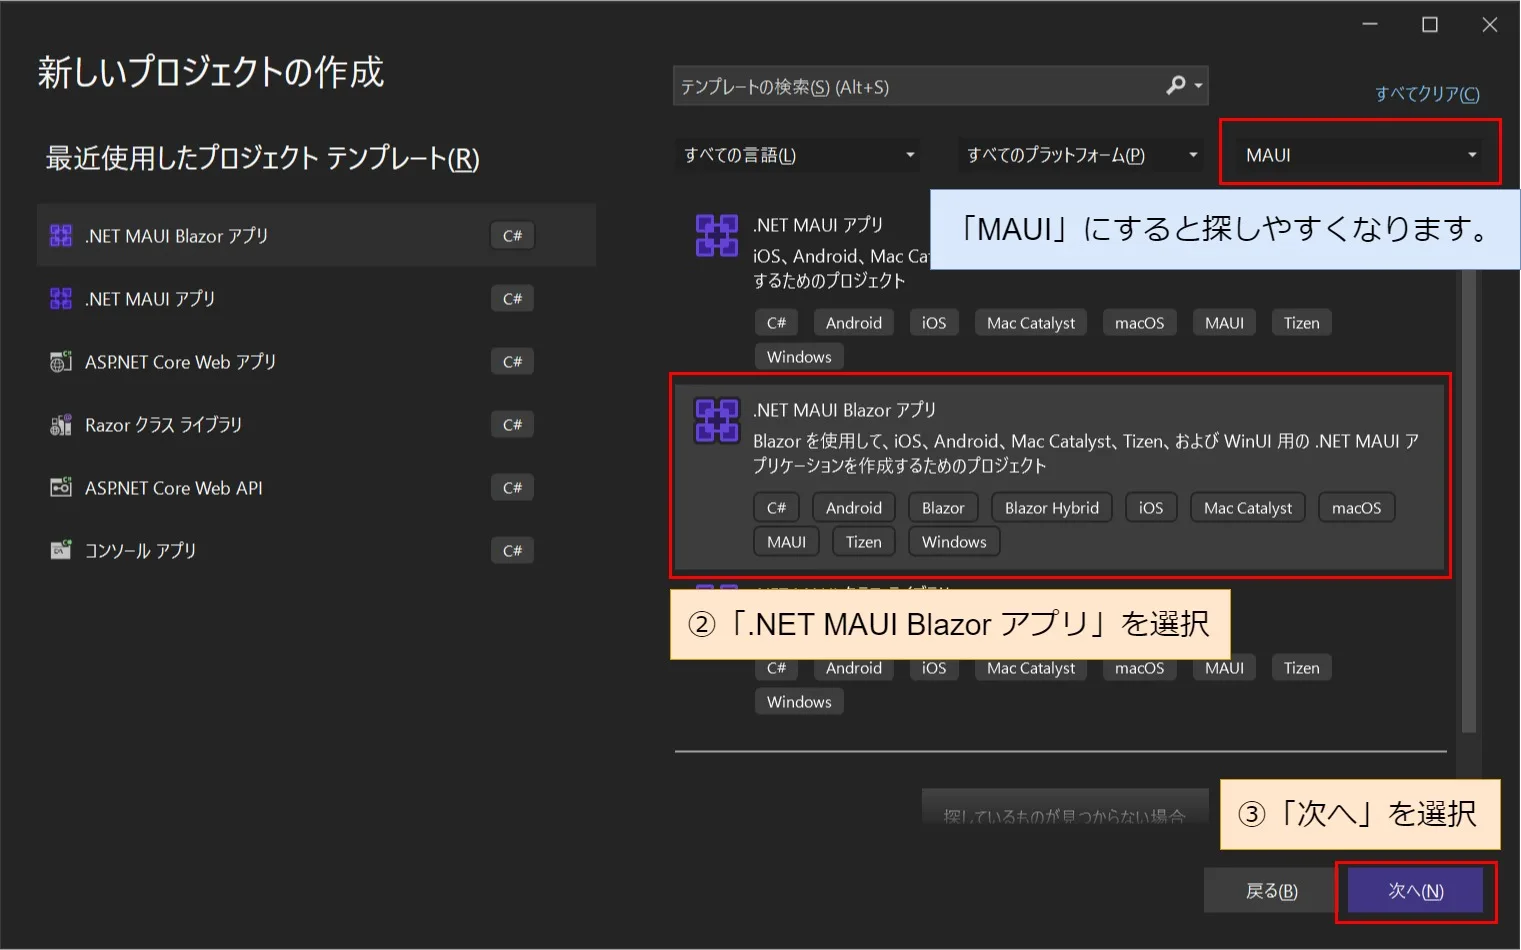 「新規プロジェクトの作成」画面から「.NET MAUI Blazor アプリ」を選択